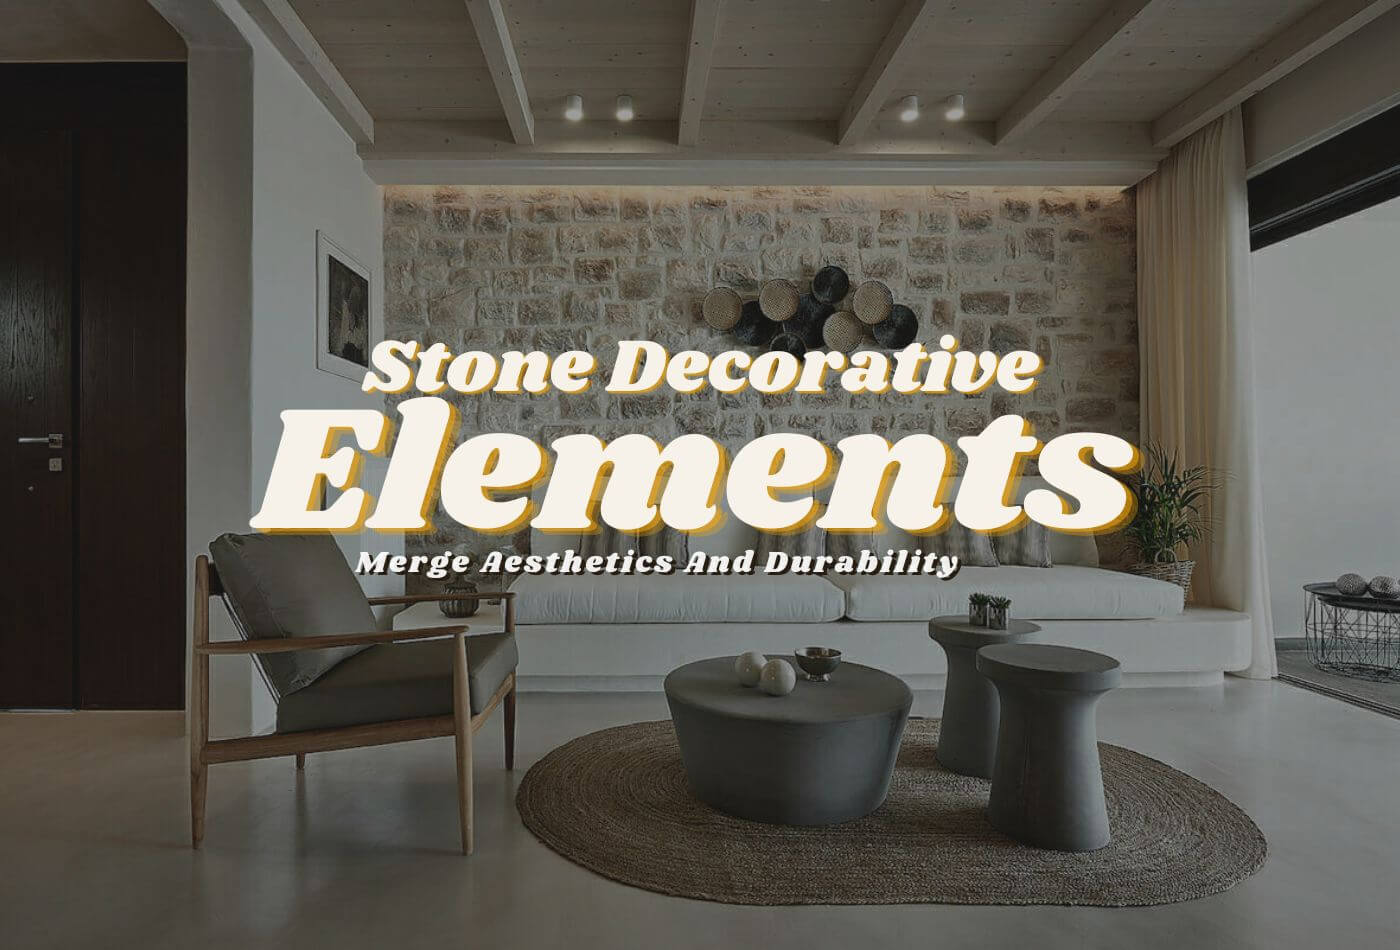 Stone Decorative Elements: Merge Aesthetics And Durability